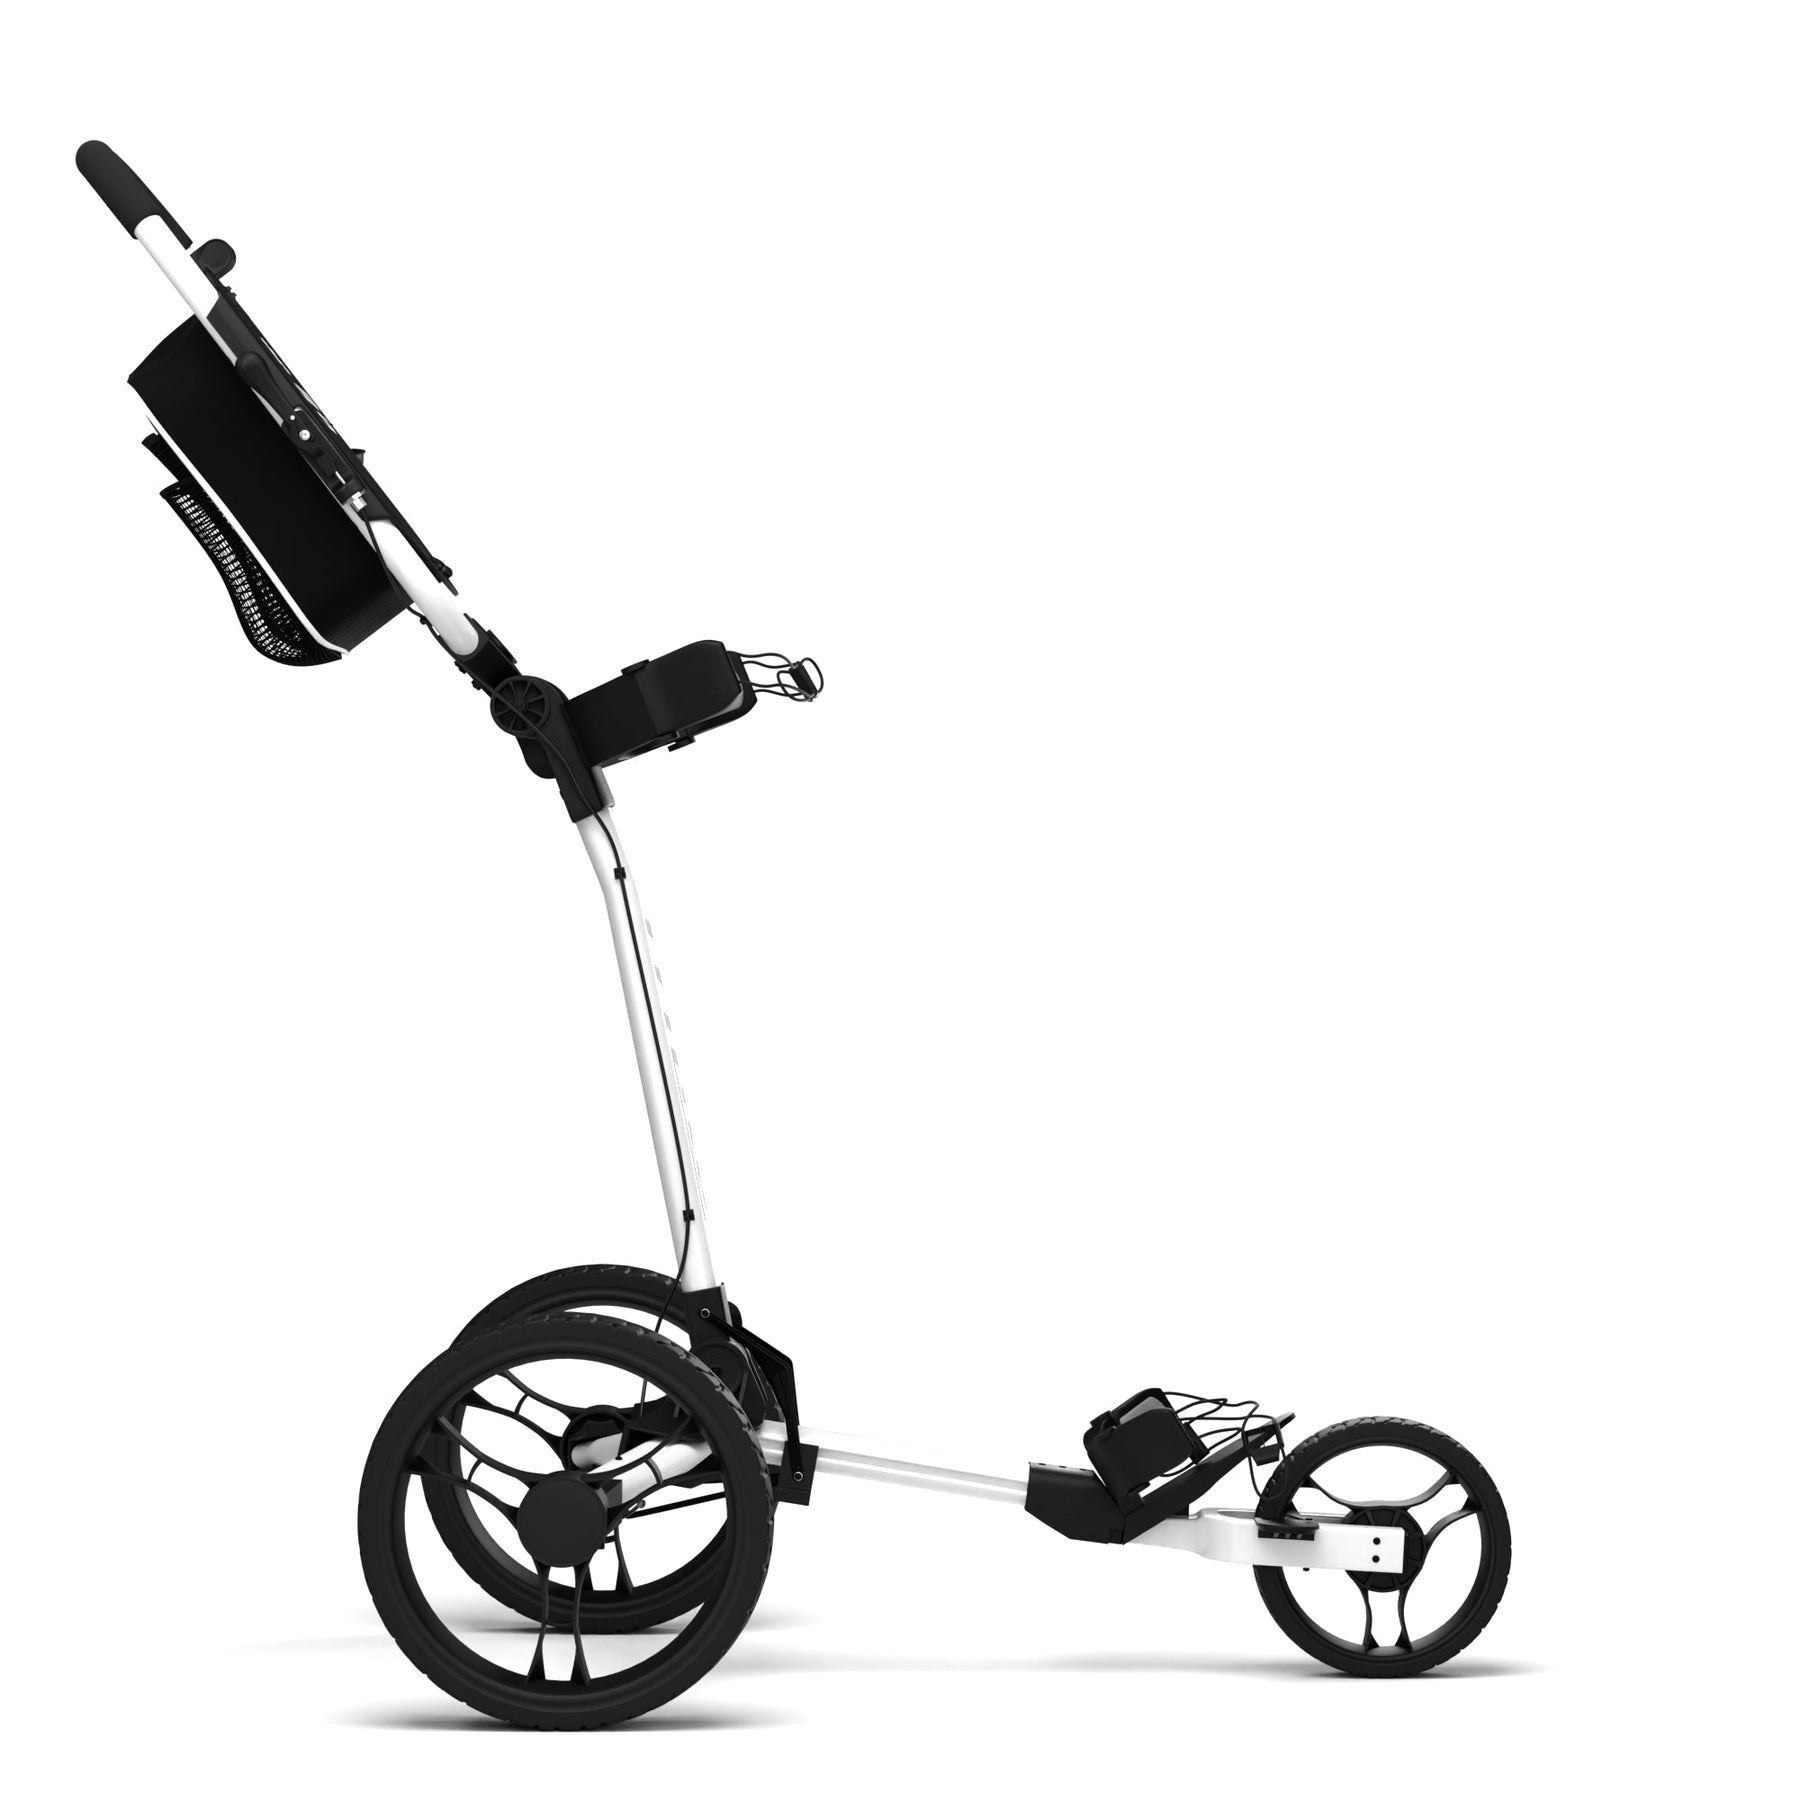 TriLite Golf Push Cart